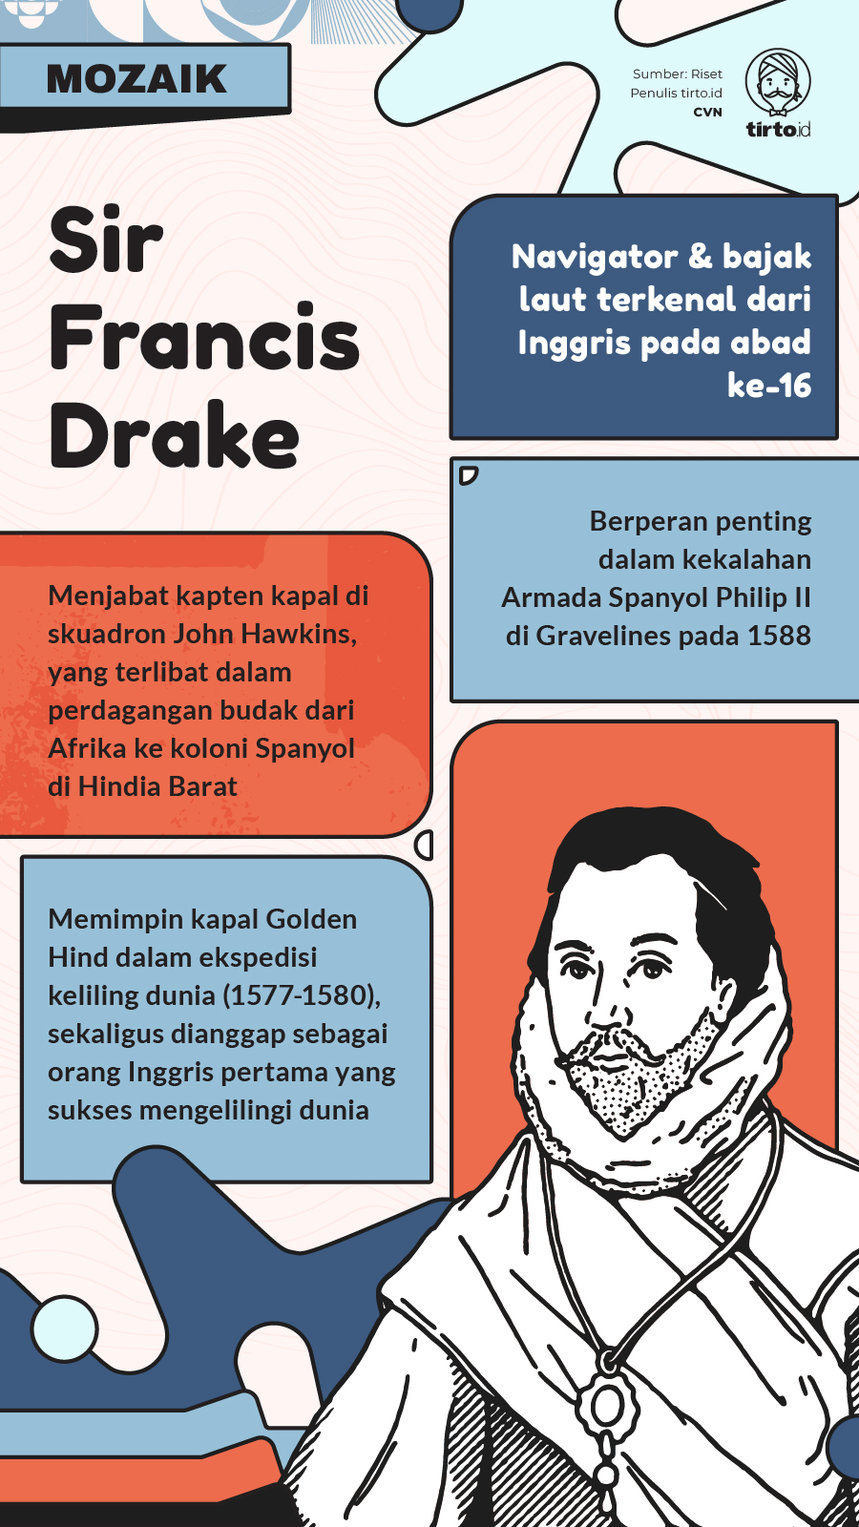 Infografik Mozaik Sir Francis Drake